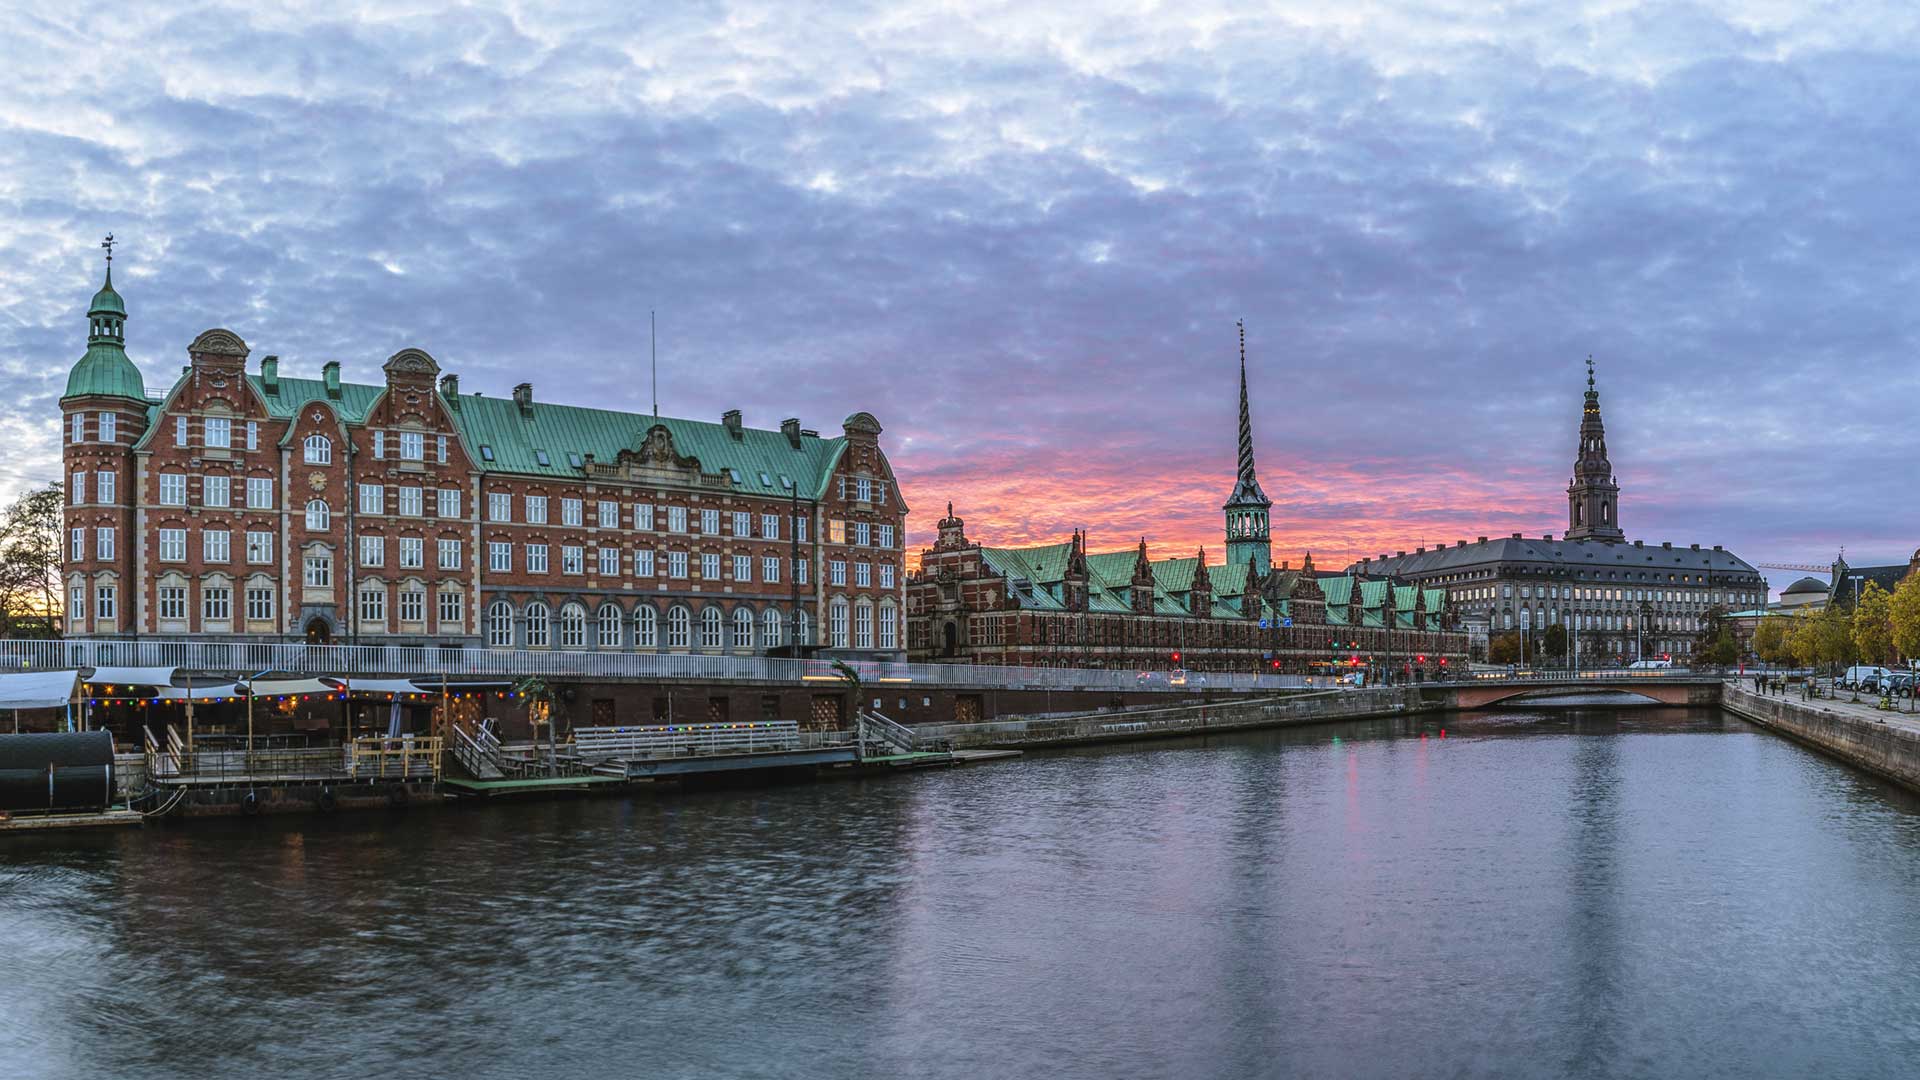 Copenhagen, Denmark at sunset